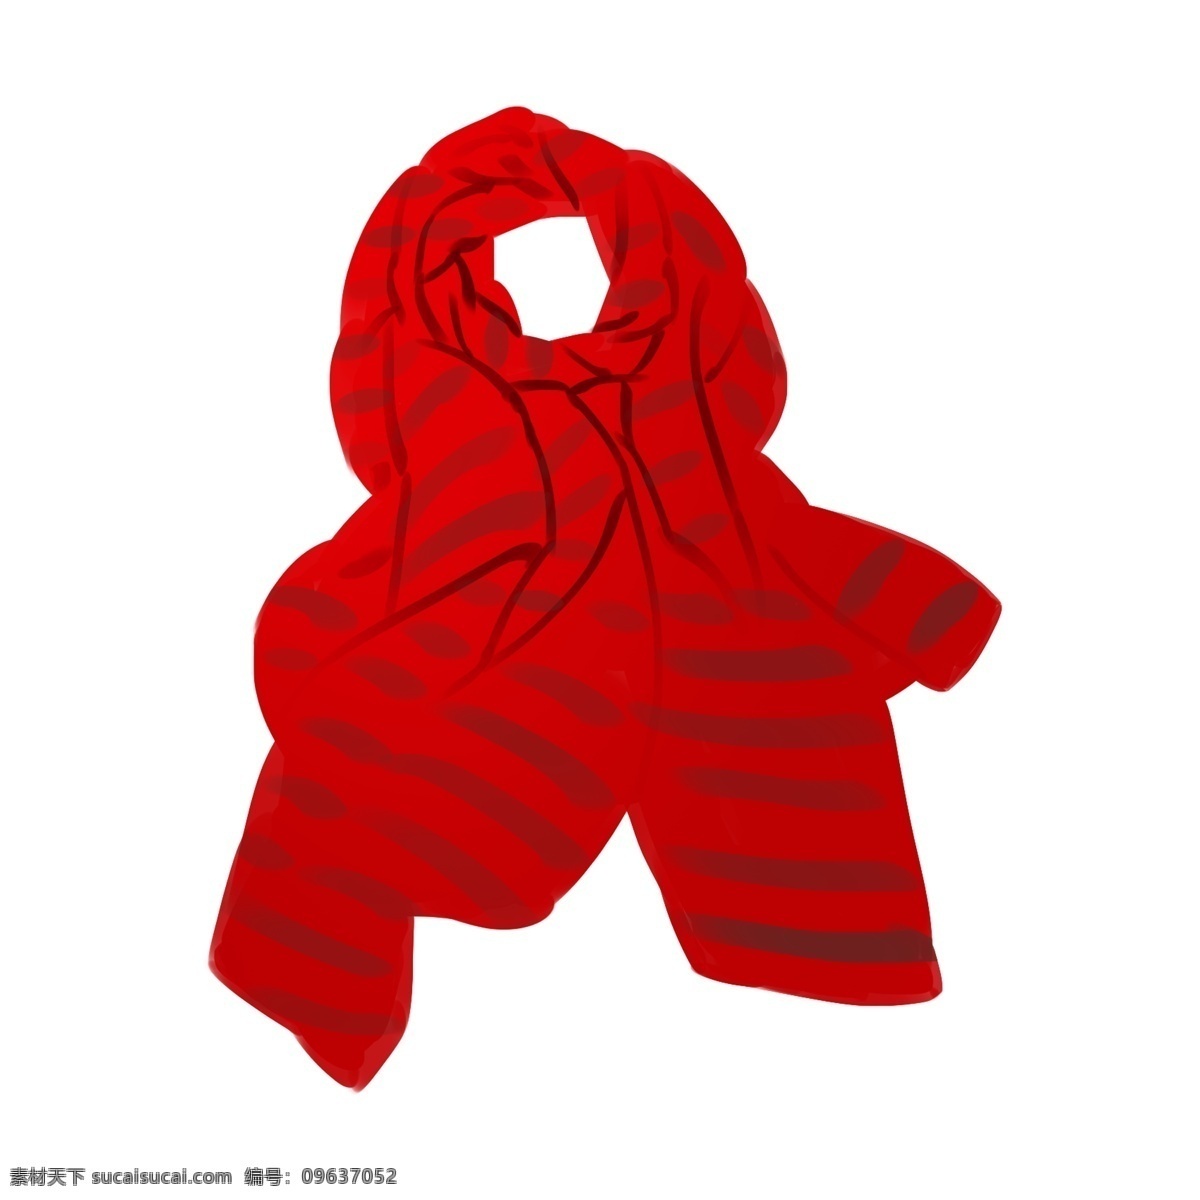 红色 女士 围巾 插画 红围巾 漂亮的围巾 红色围巾 女士围巾 红色女士围巾 红色围巾插画 丝巾